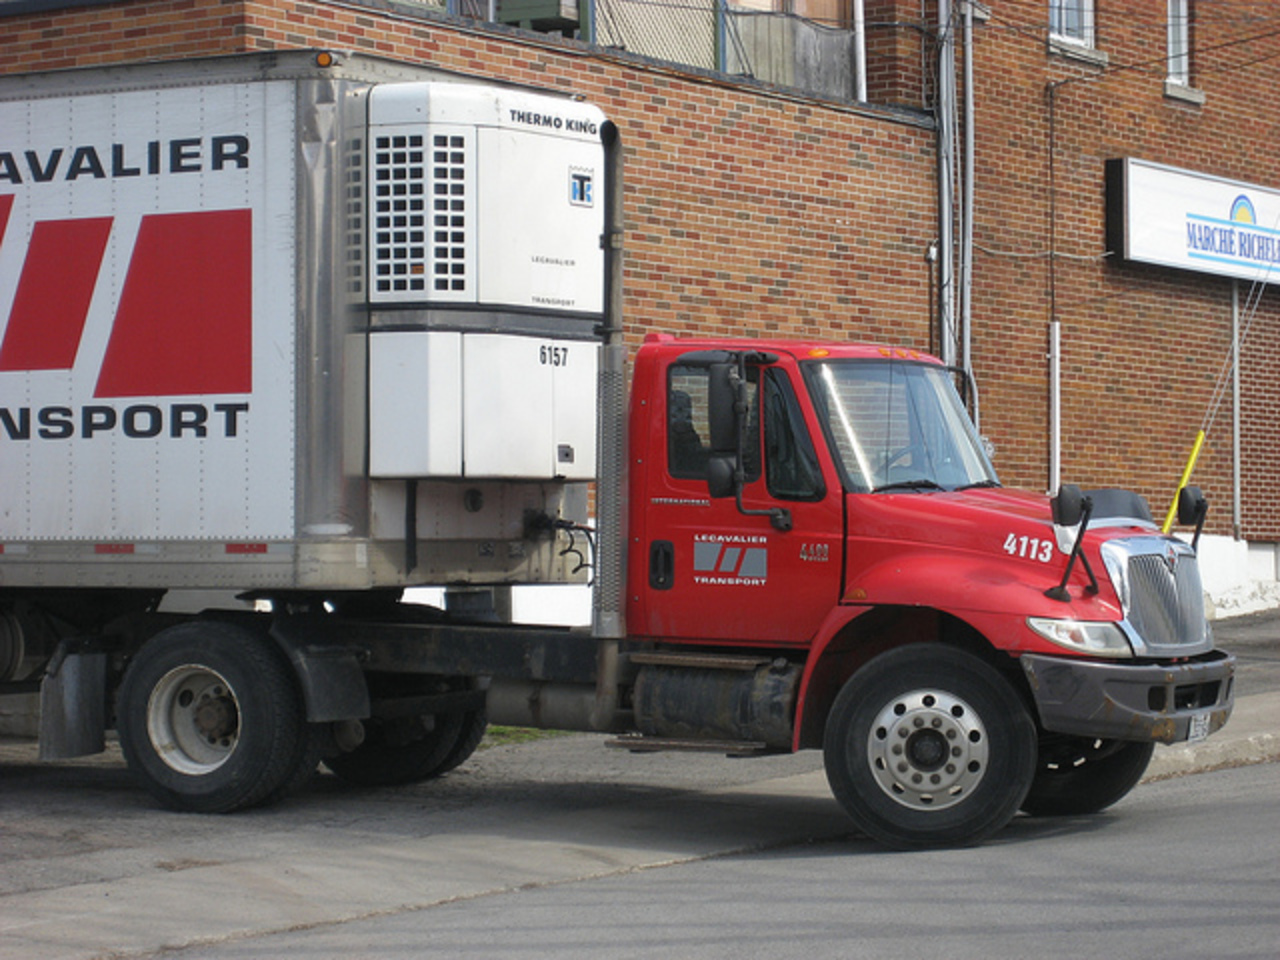 Camion Durastar International 4400 truck | Flickr - Photo Sharing!